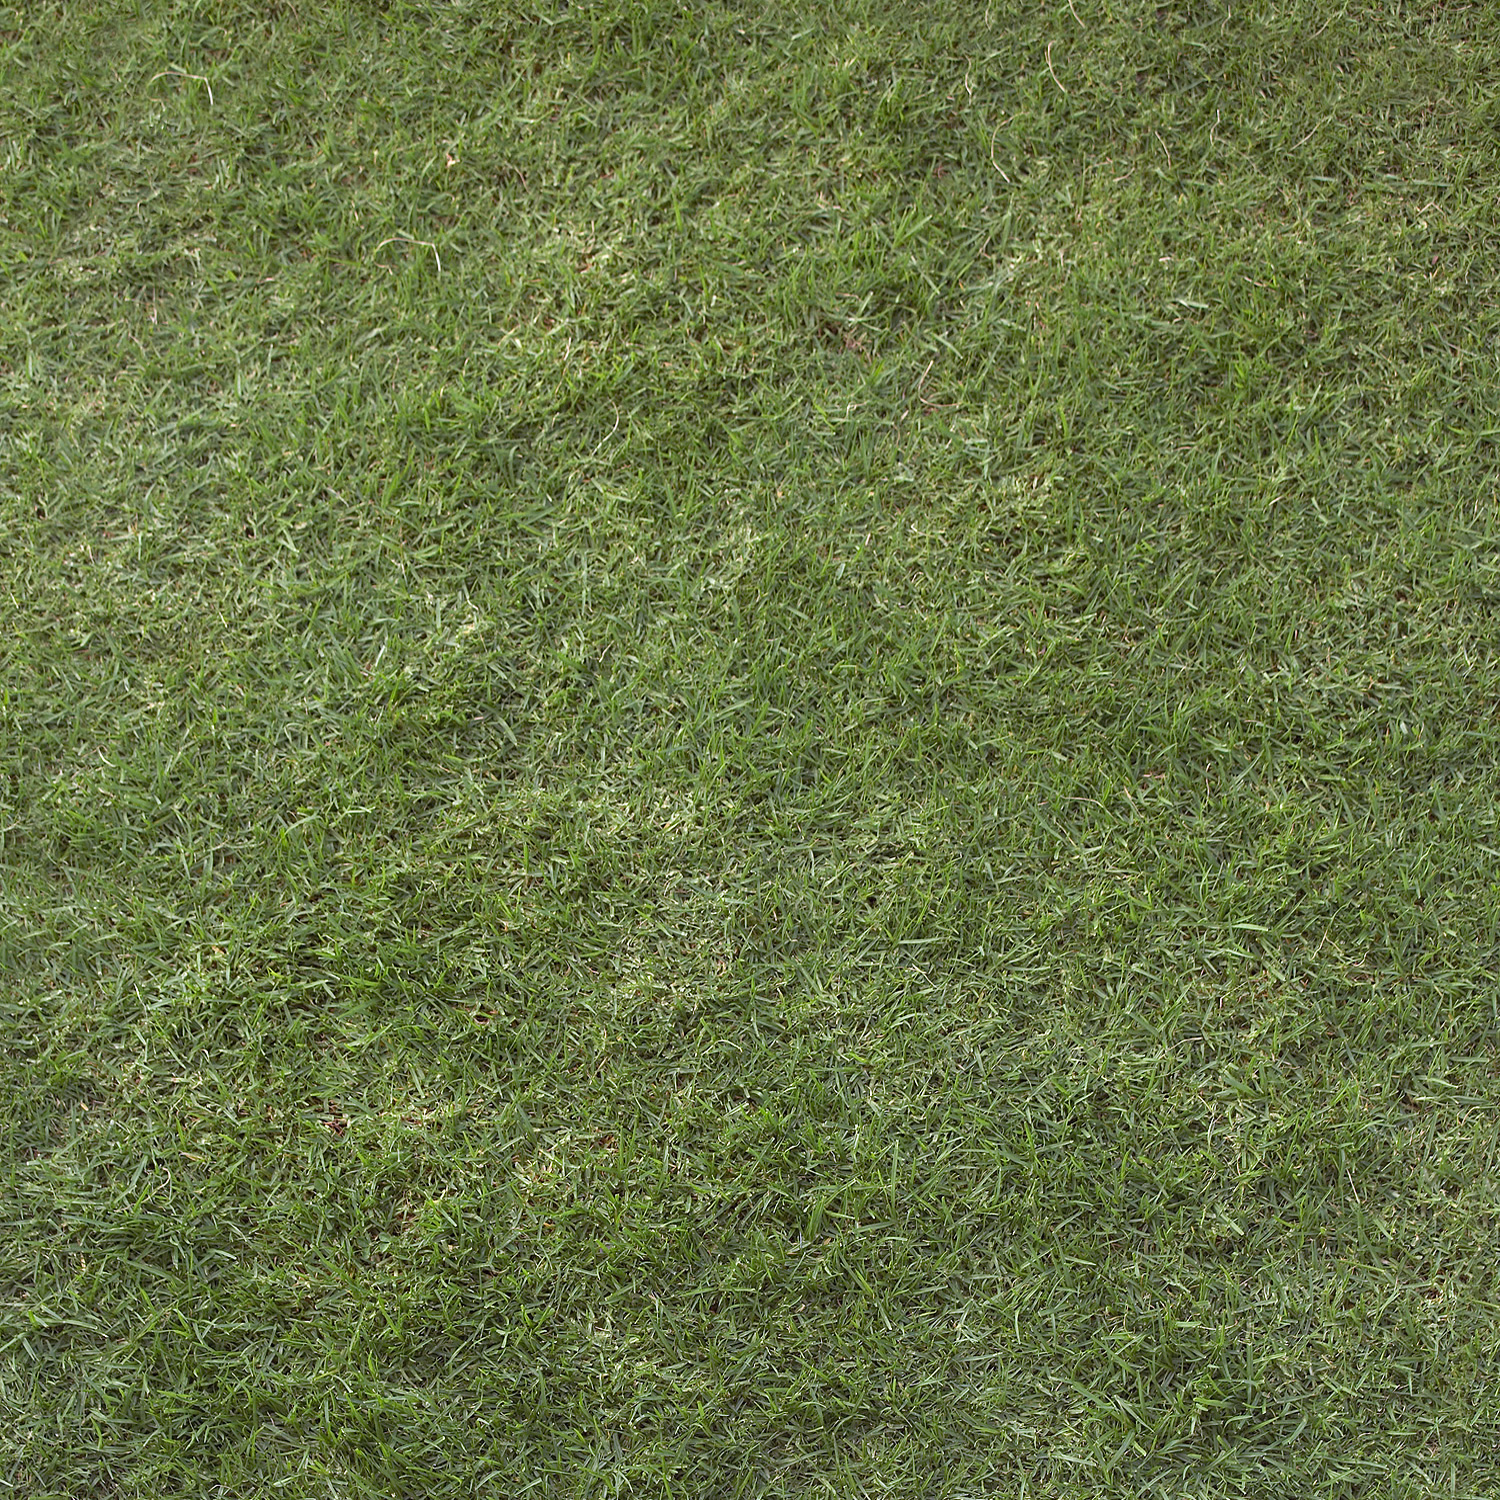 Скачать текстуру в высоком разрешении: зеленая трава, фон, текстура,  скачать фото, green grass texture